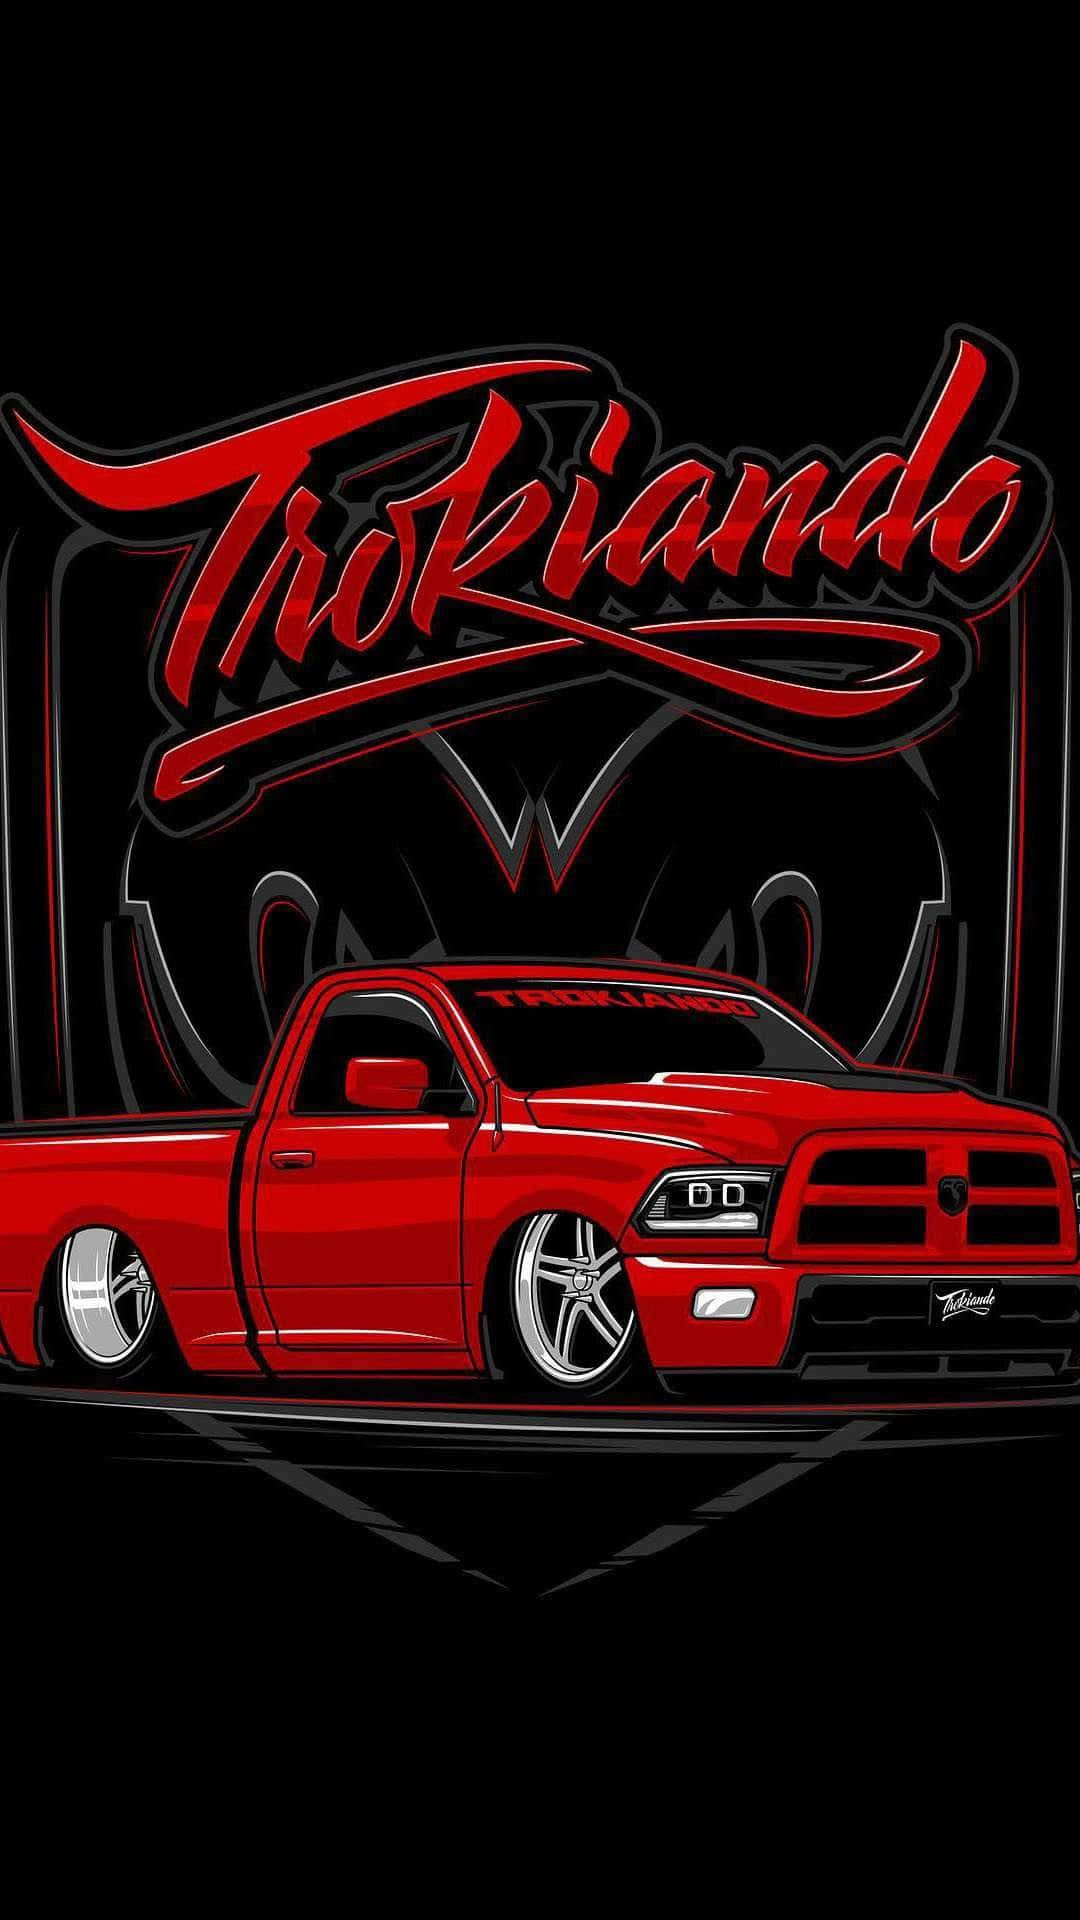 Red Trokiando Truck Artwork Wallpaper